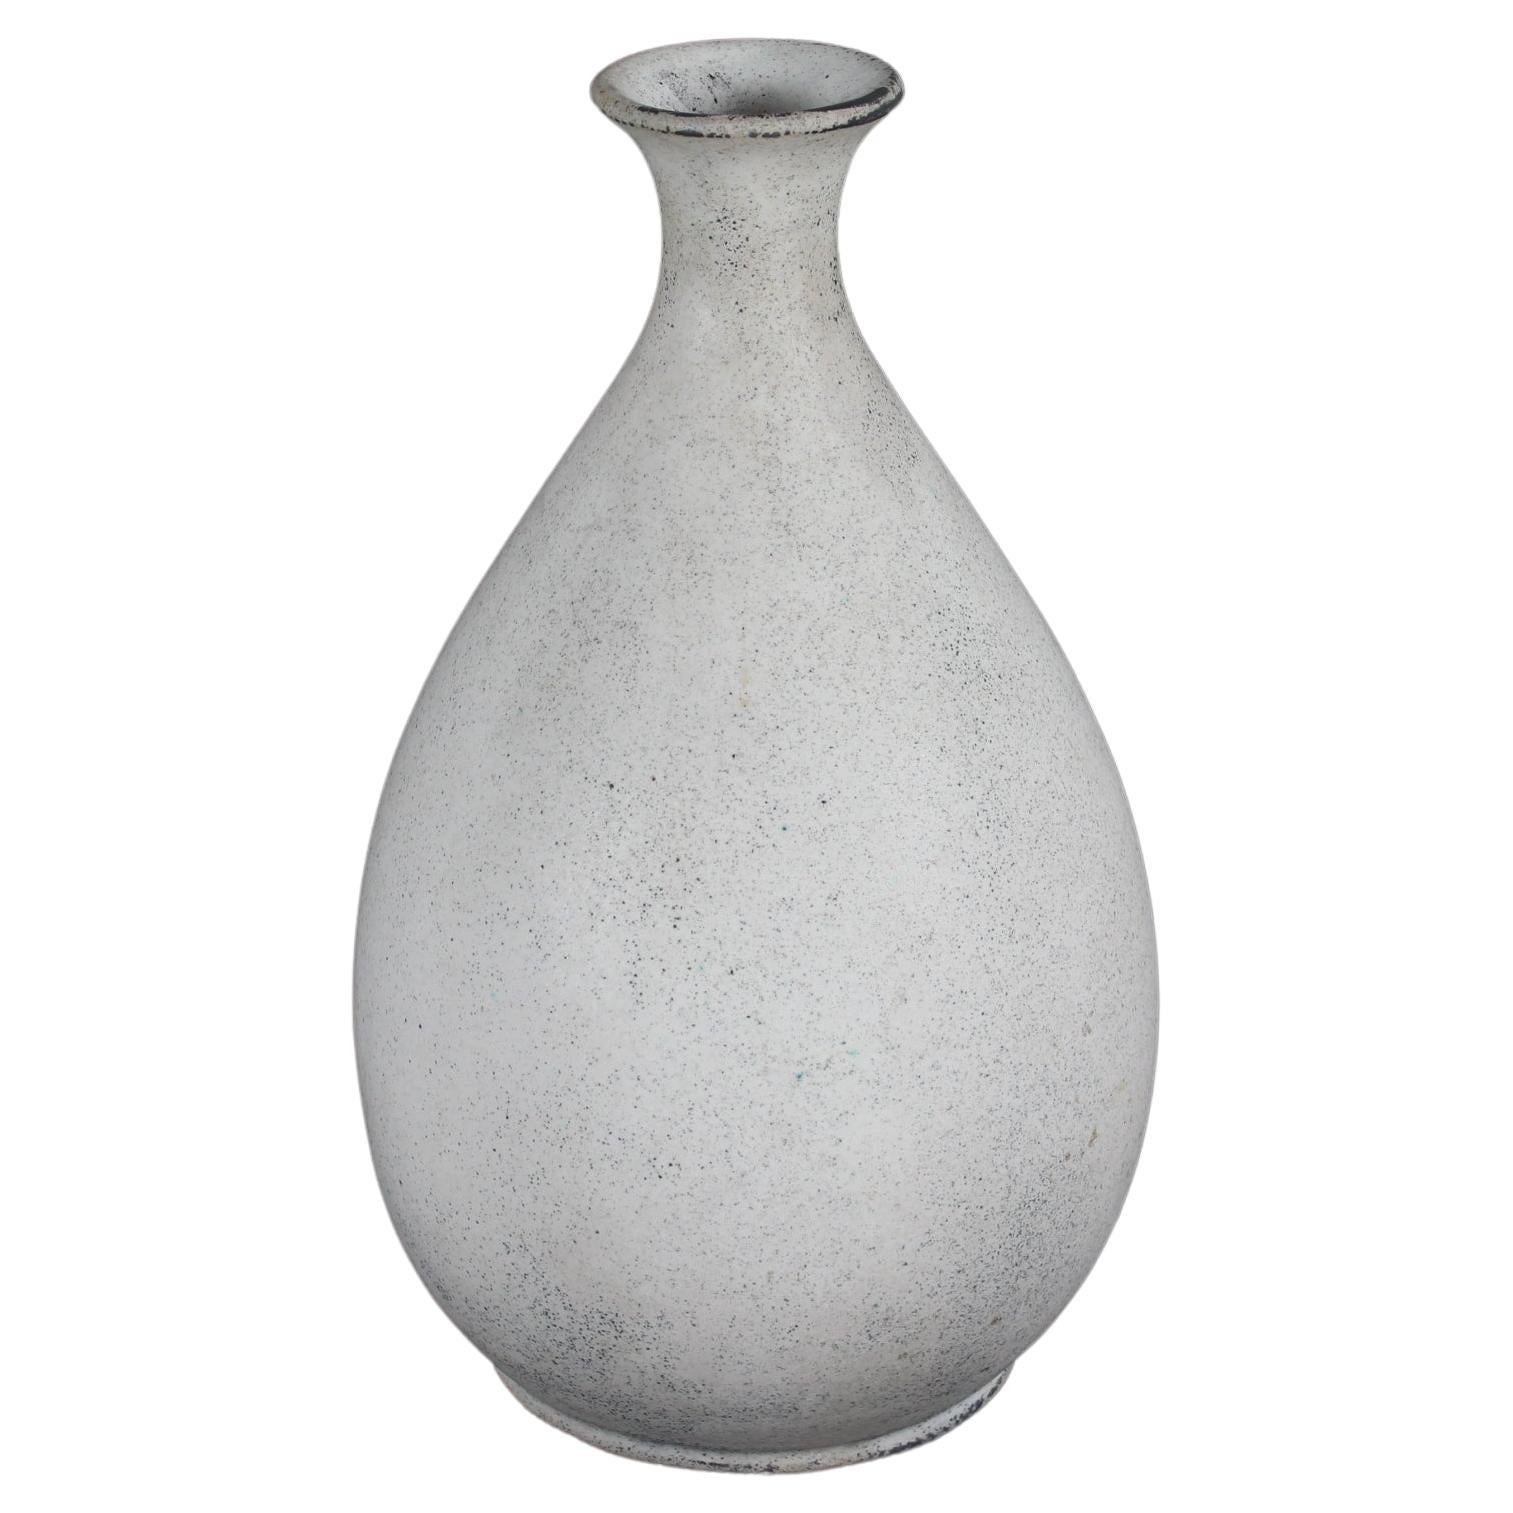 Nils Kähler Baluster Shaped Vase with Matte Ash Grey Glaze, HAK, Denmark, 1940s For Sale